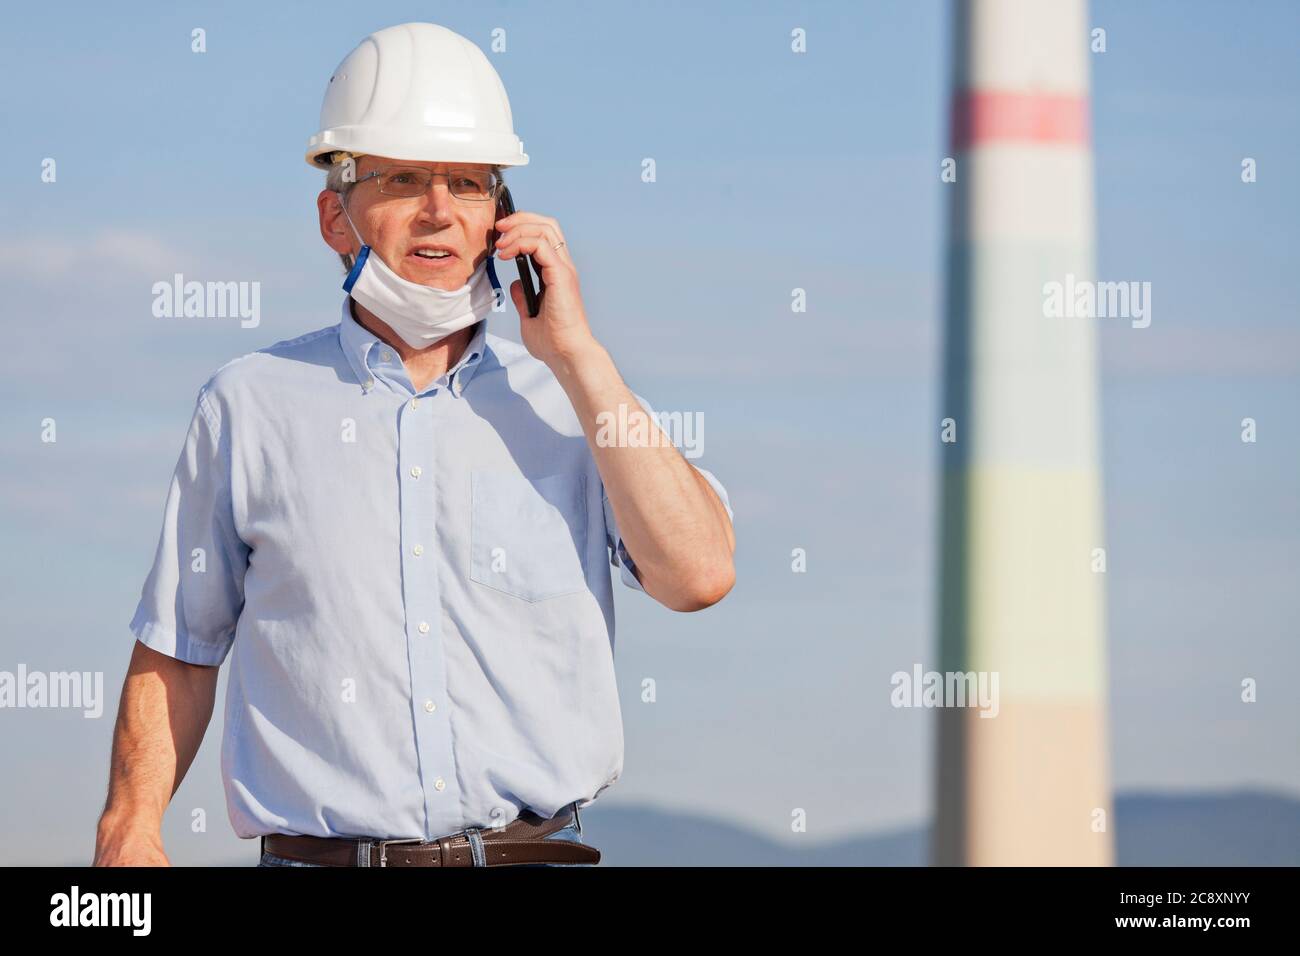 Leitender oder reifer Ingenieur, Architekt oder Inspektor mit Gesichtsmaske beim Telefonieren auf einer Baustelle oder Fabrik - selektiver Fokus Stockfoto